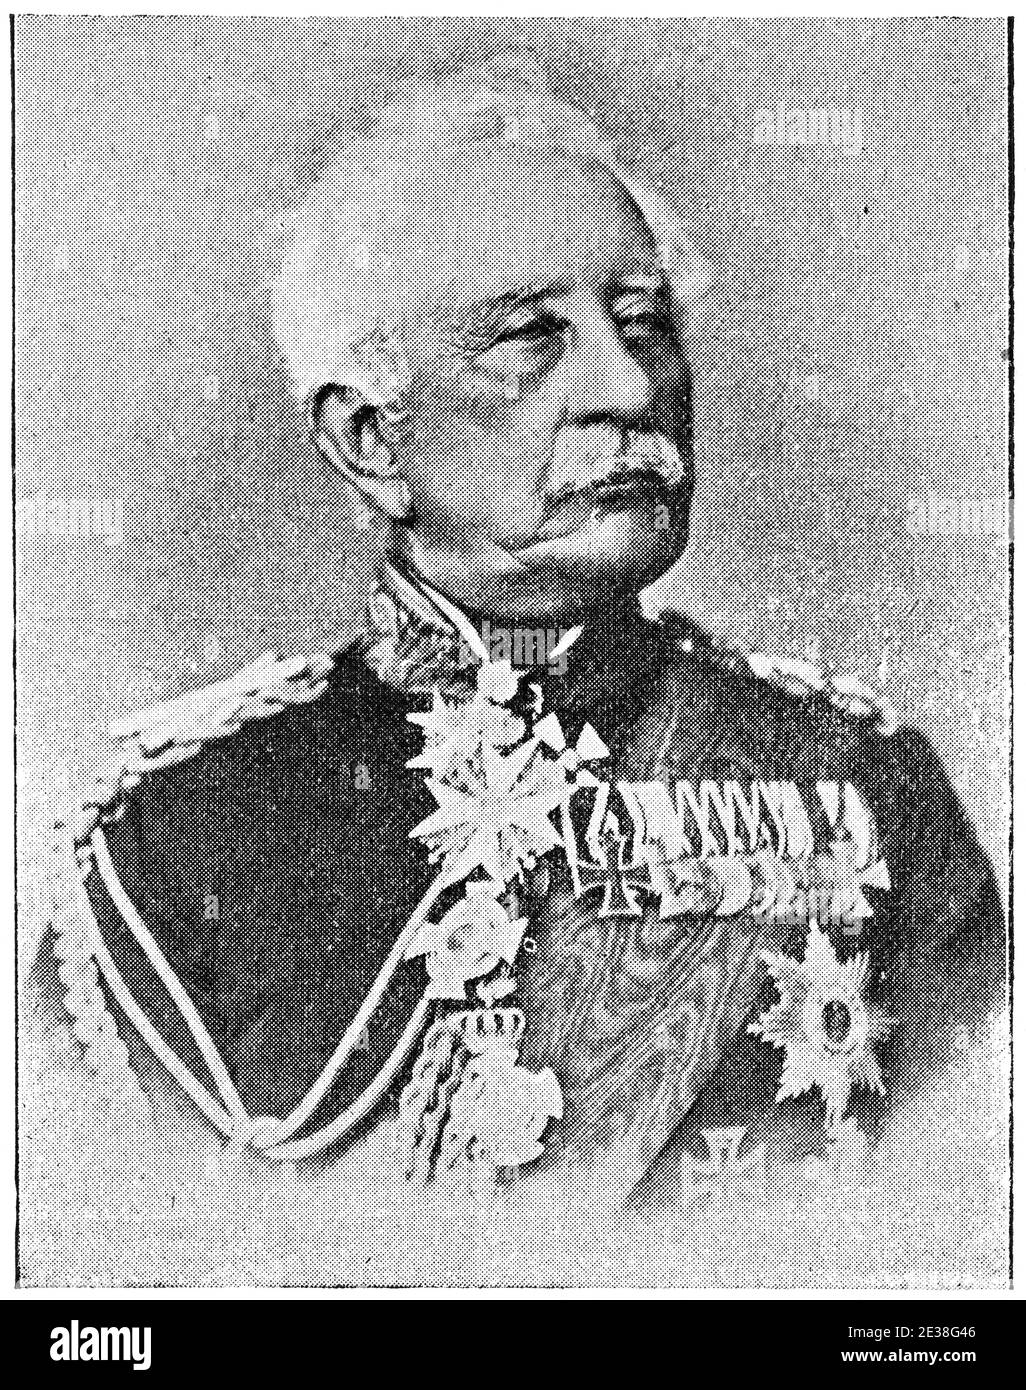 Portrait of Karl Friedrich von Steinmetz - a Prussian Generalfeldmarschall. Illustration of the 19th century. Germany. White background. Stock Photo